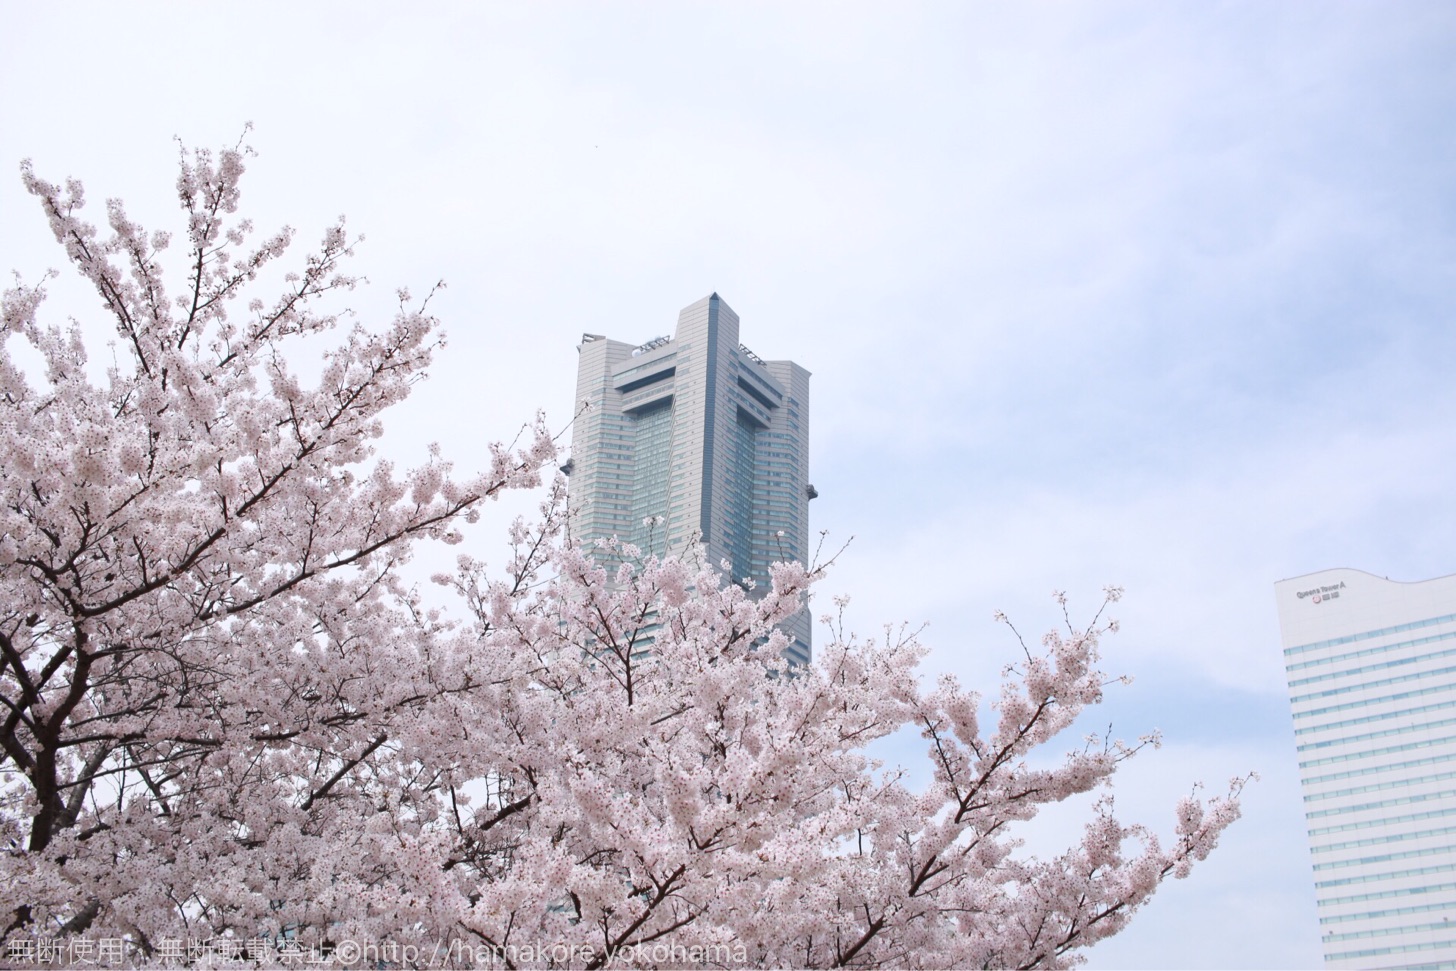 横浜ランドマークタワーと桜